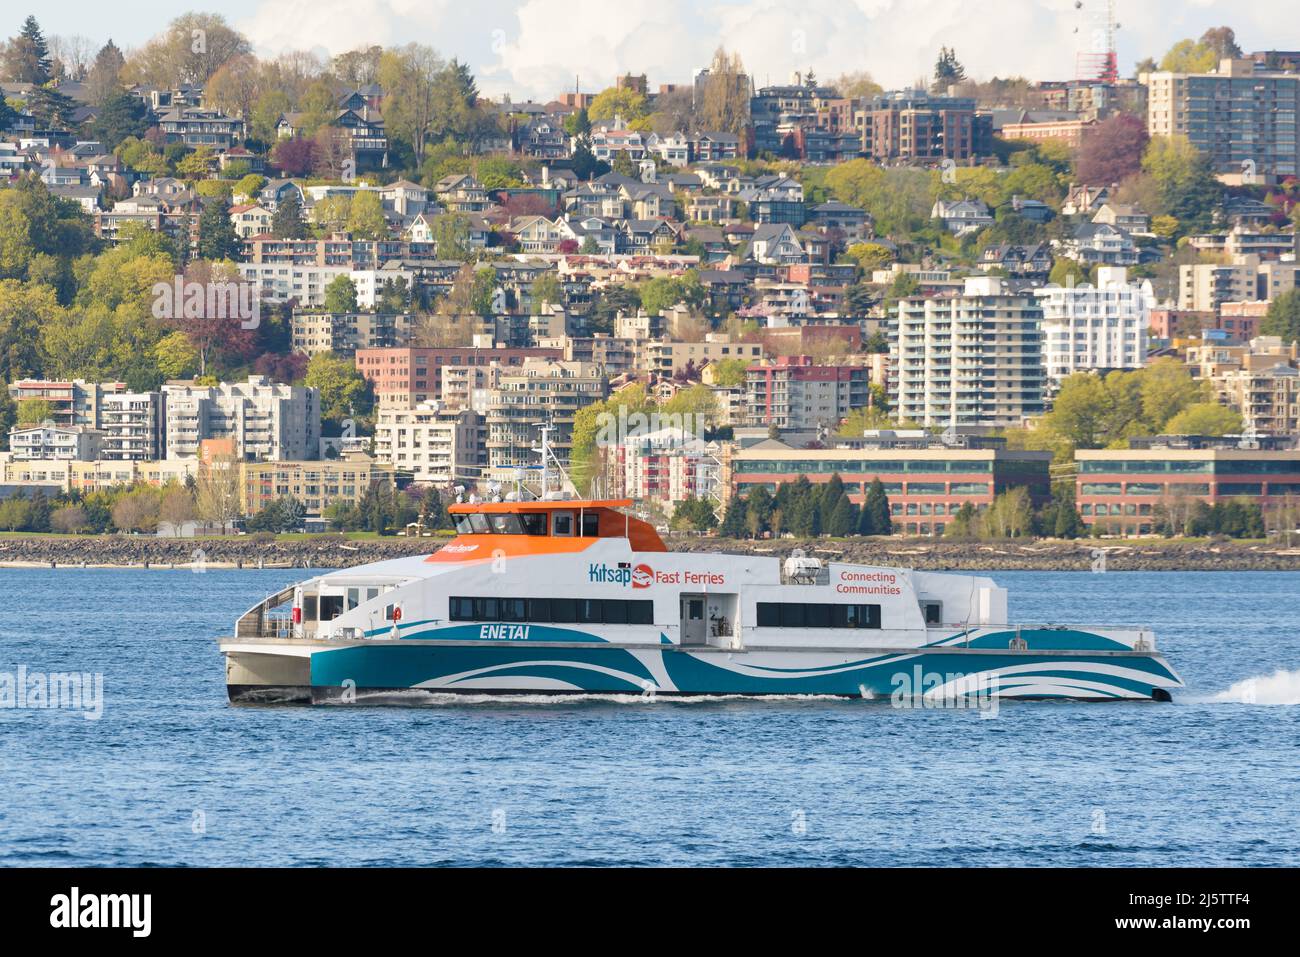 Seattle - 22. April 2022; Kitsap Fast Ferries Katamaran Enetai verlässt Seattle mit Service über die Elliott Bay mit Hang in Queen Anne dahinter Stockfoto